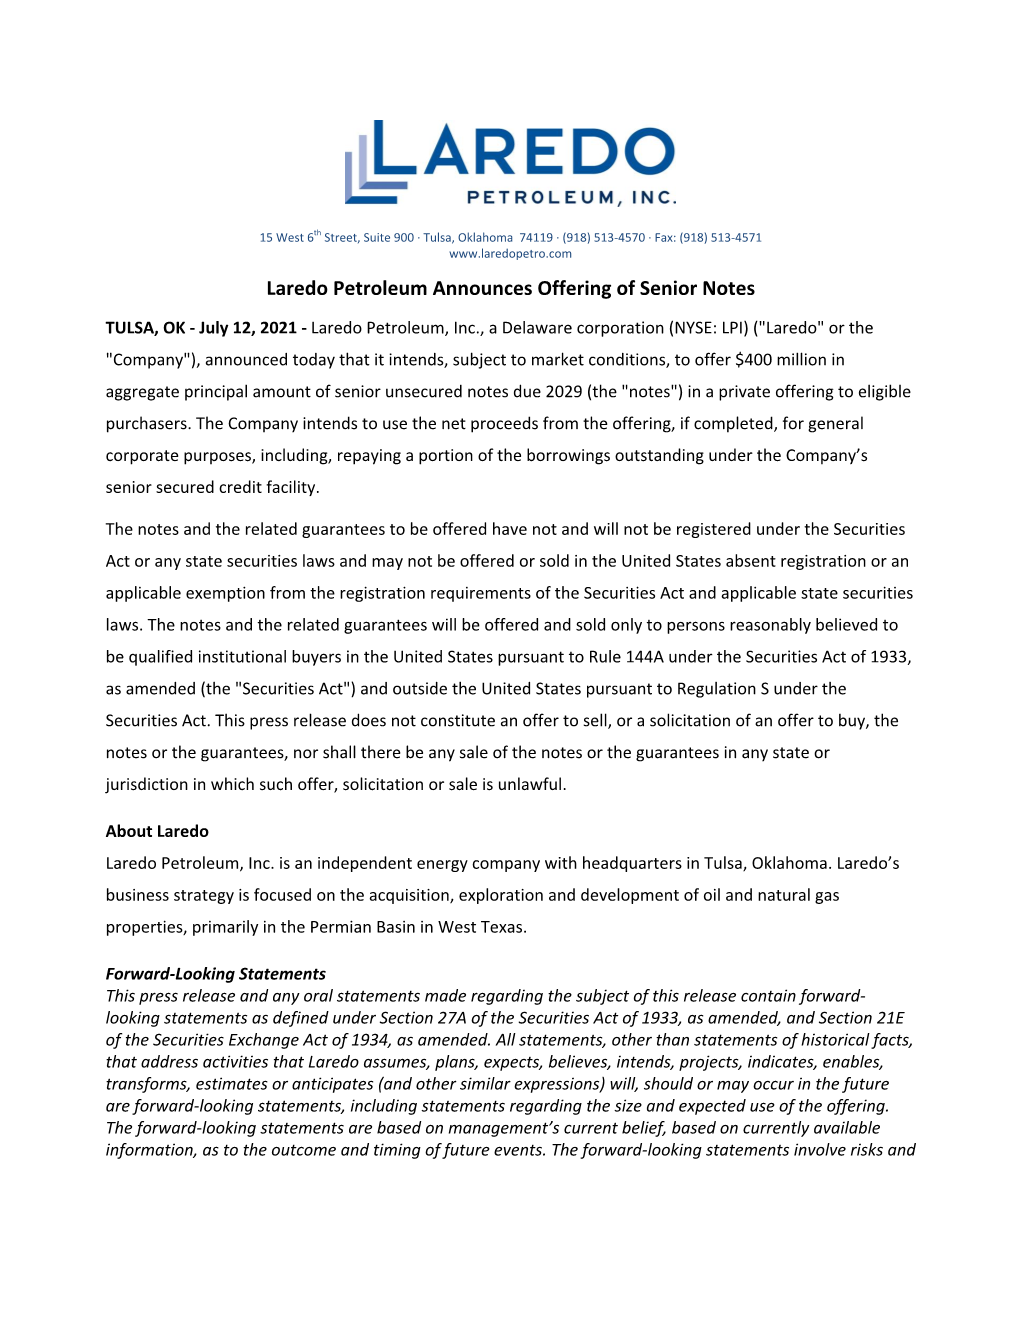 7.12.21 Laredo Petroleum Announces Offering of Senior Notes